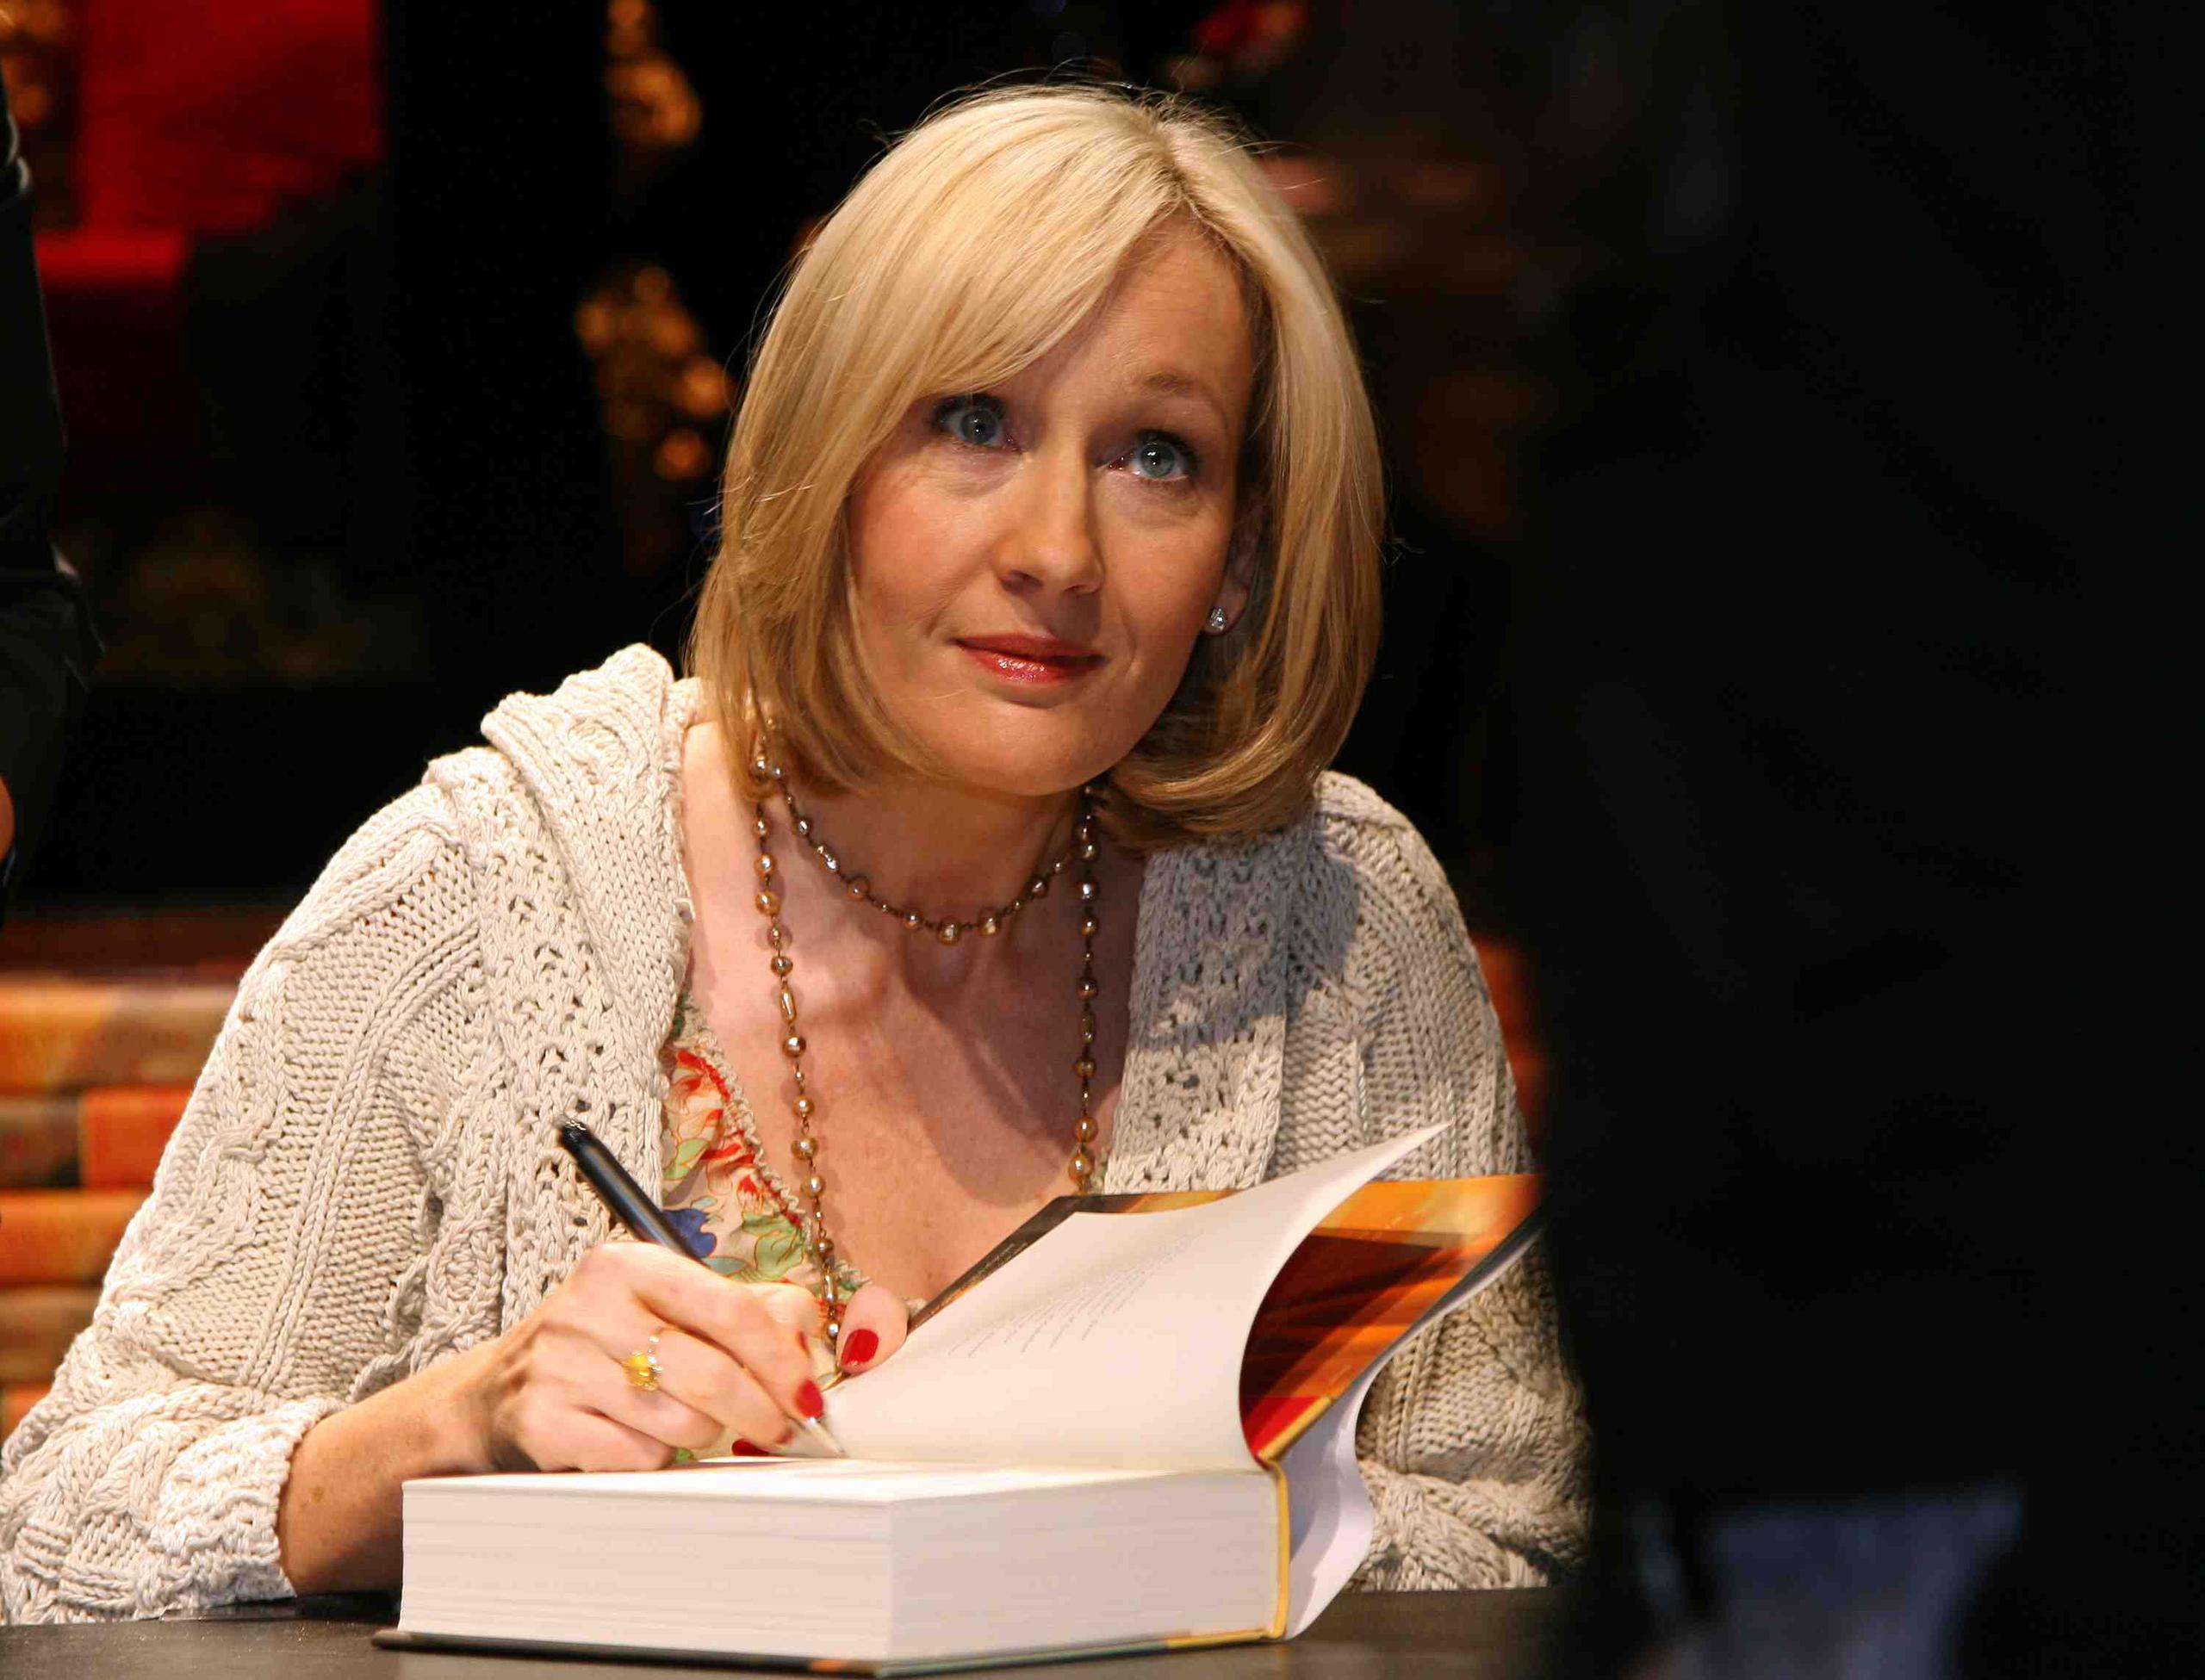 La escritora británica JK Rowling respondió a las críticas a través de las redes sociales. (Archivo GFR/ Media)